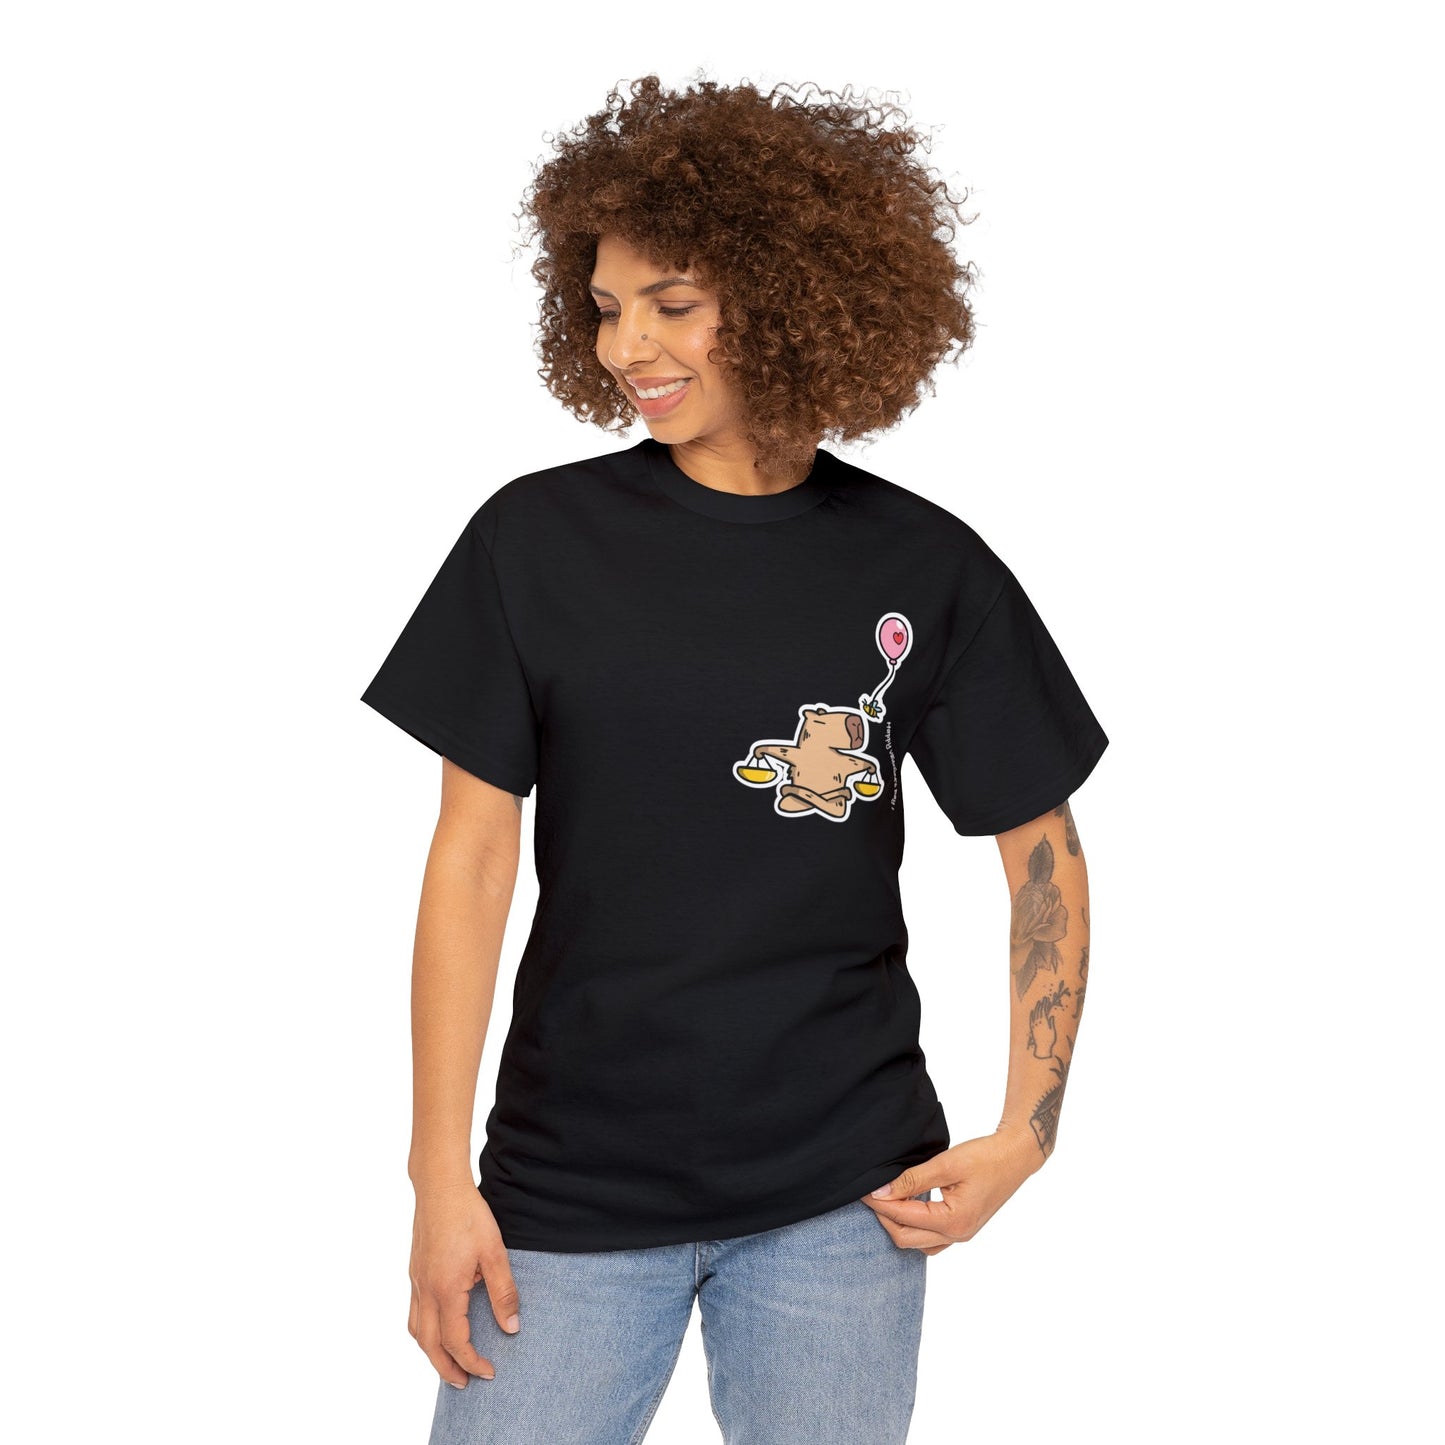 Libra T-shirt Women